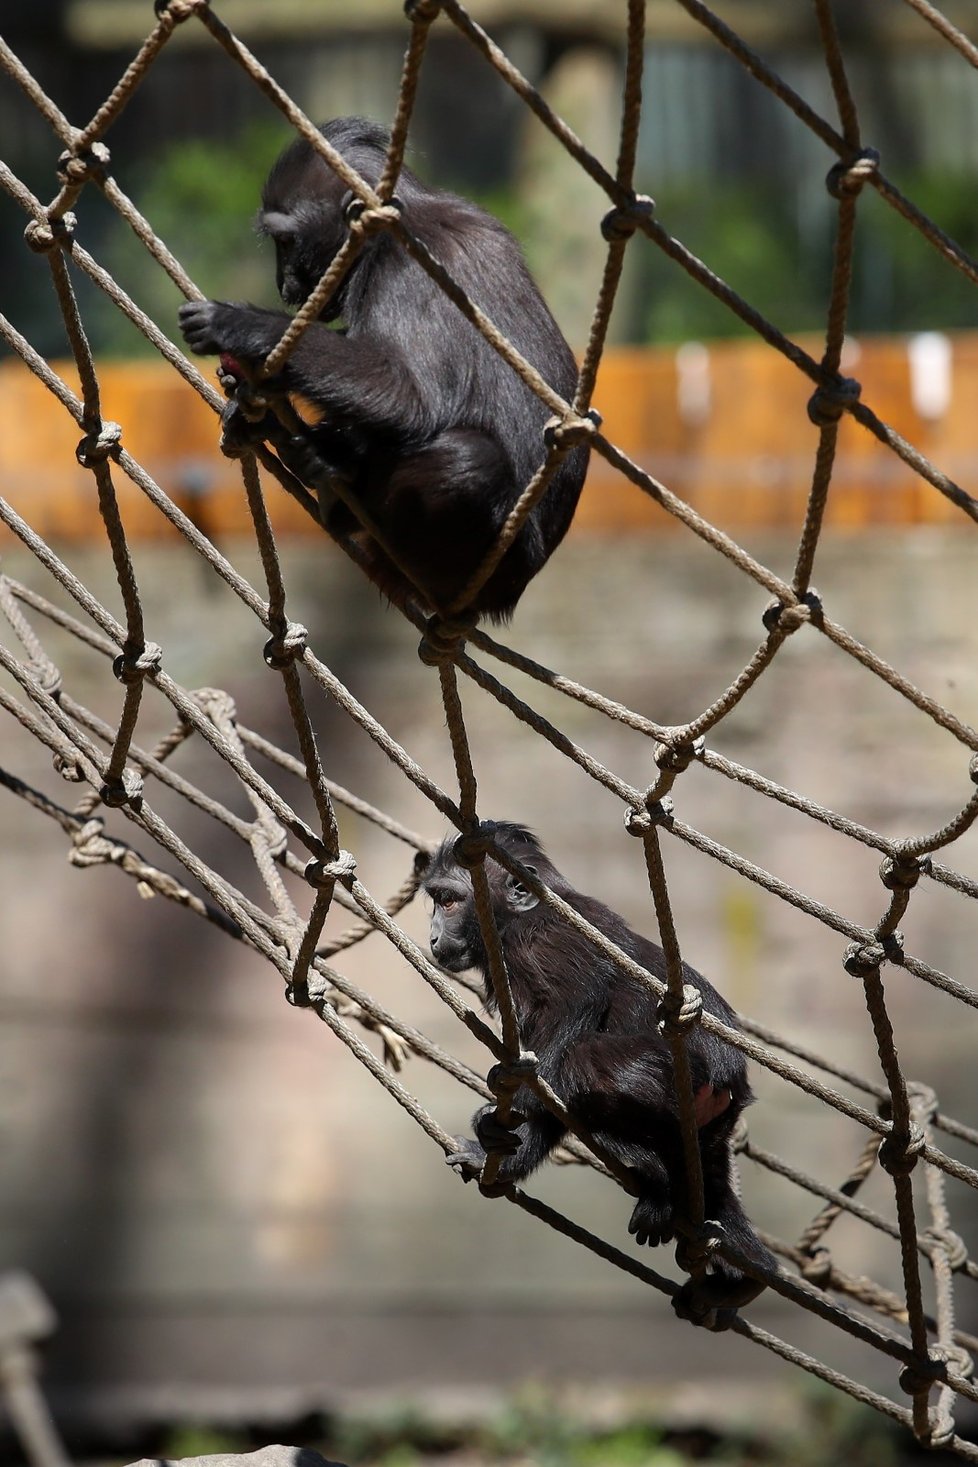 Makak chocholatý v děčínské zoo.